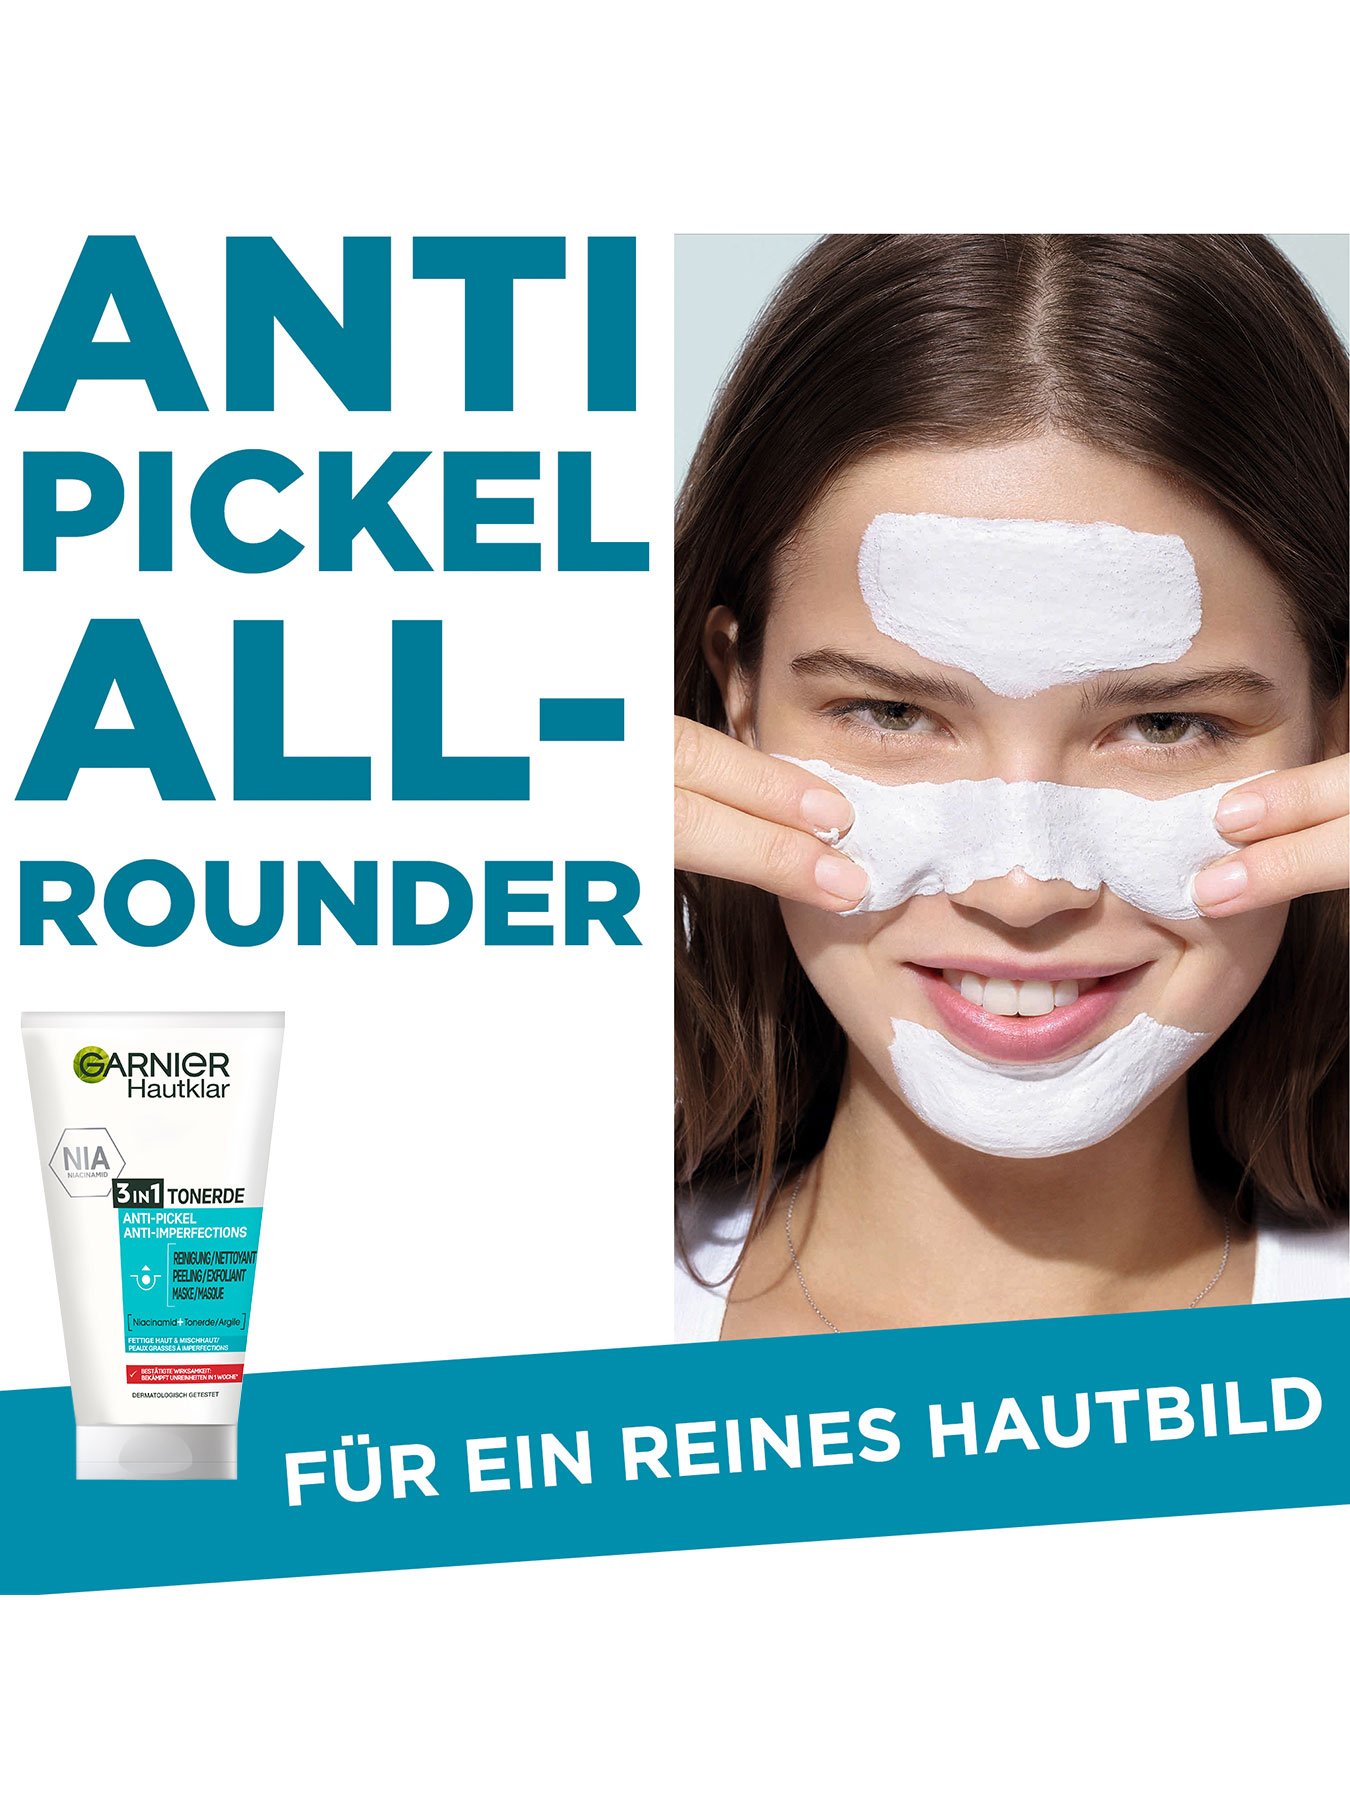 Hautklar 3 in 1 Reinigung + Peeling + Maske - Antipickel Allrounder